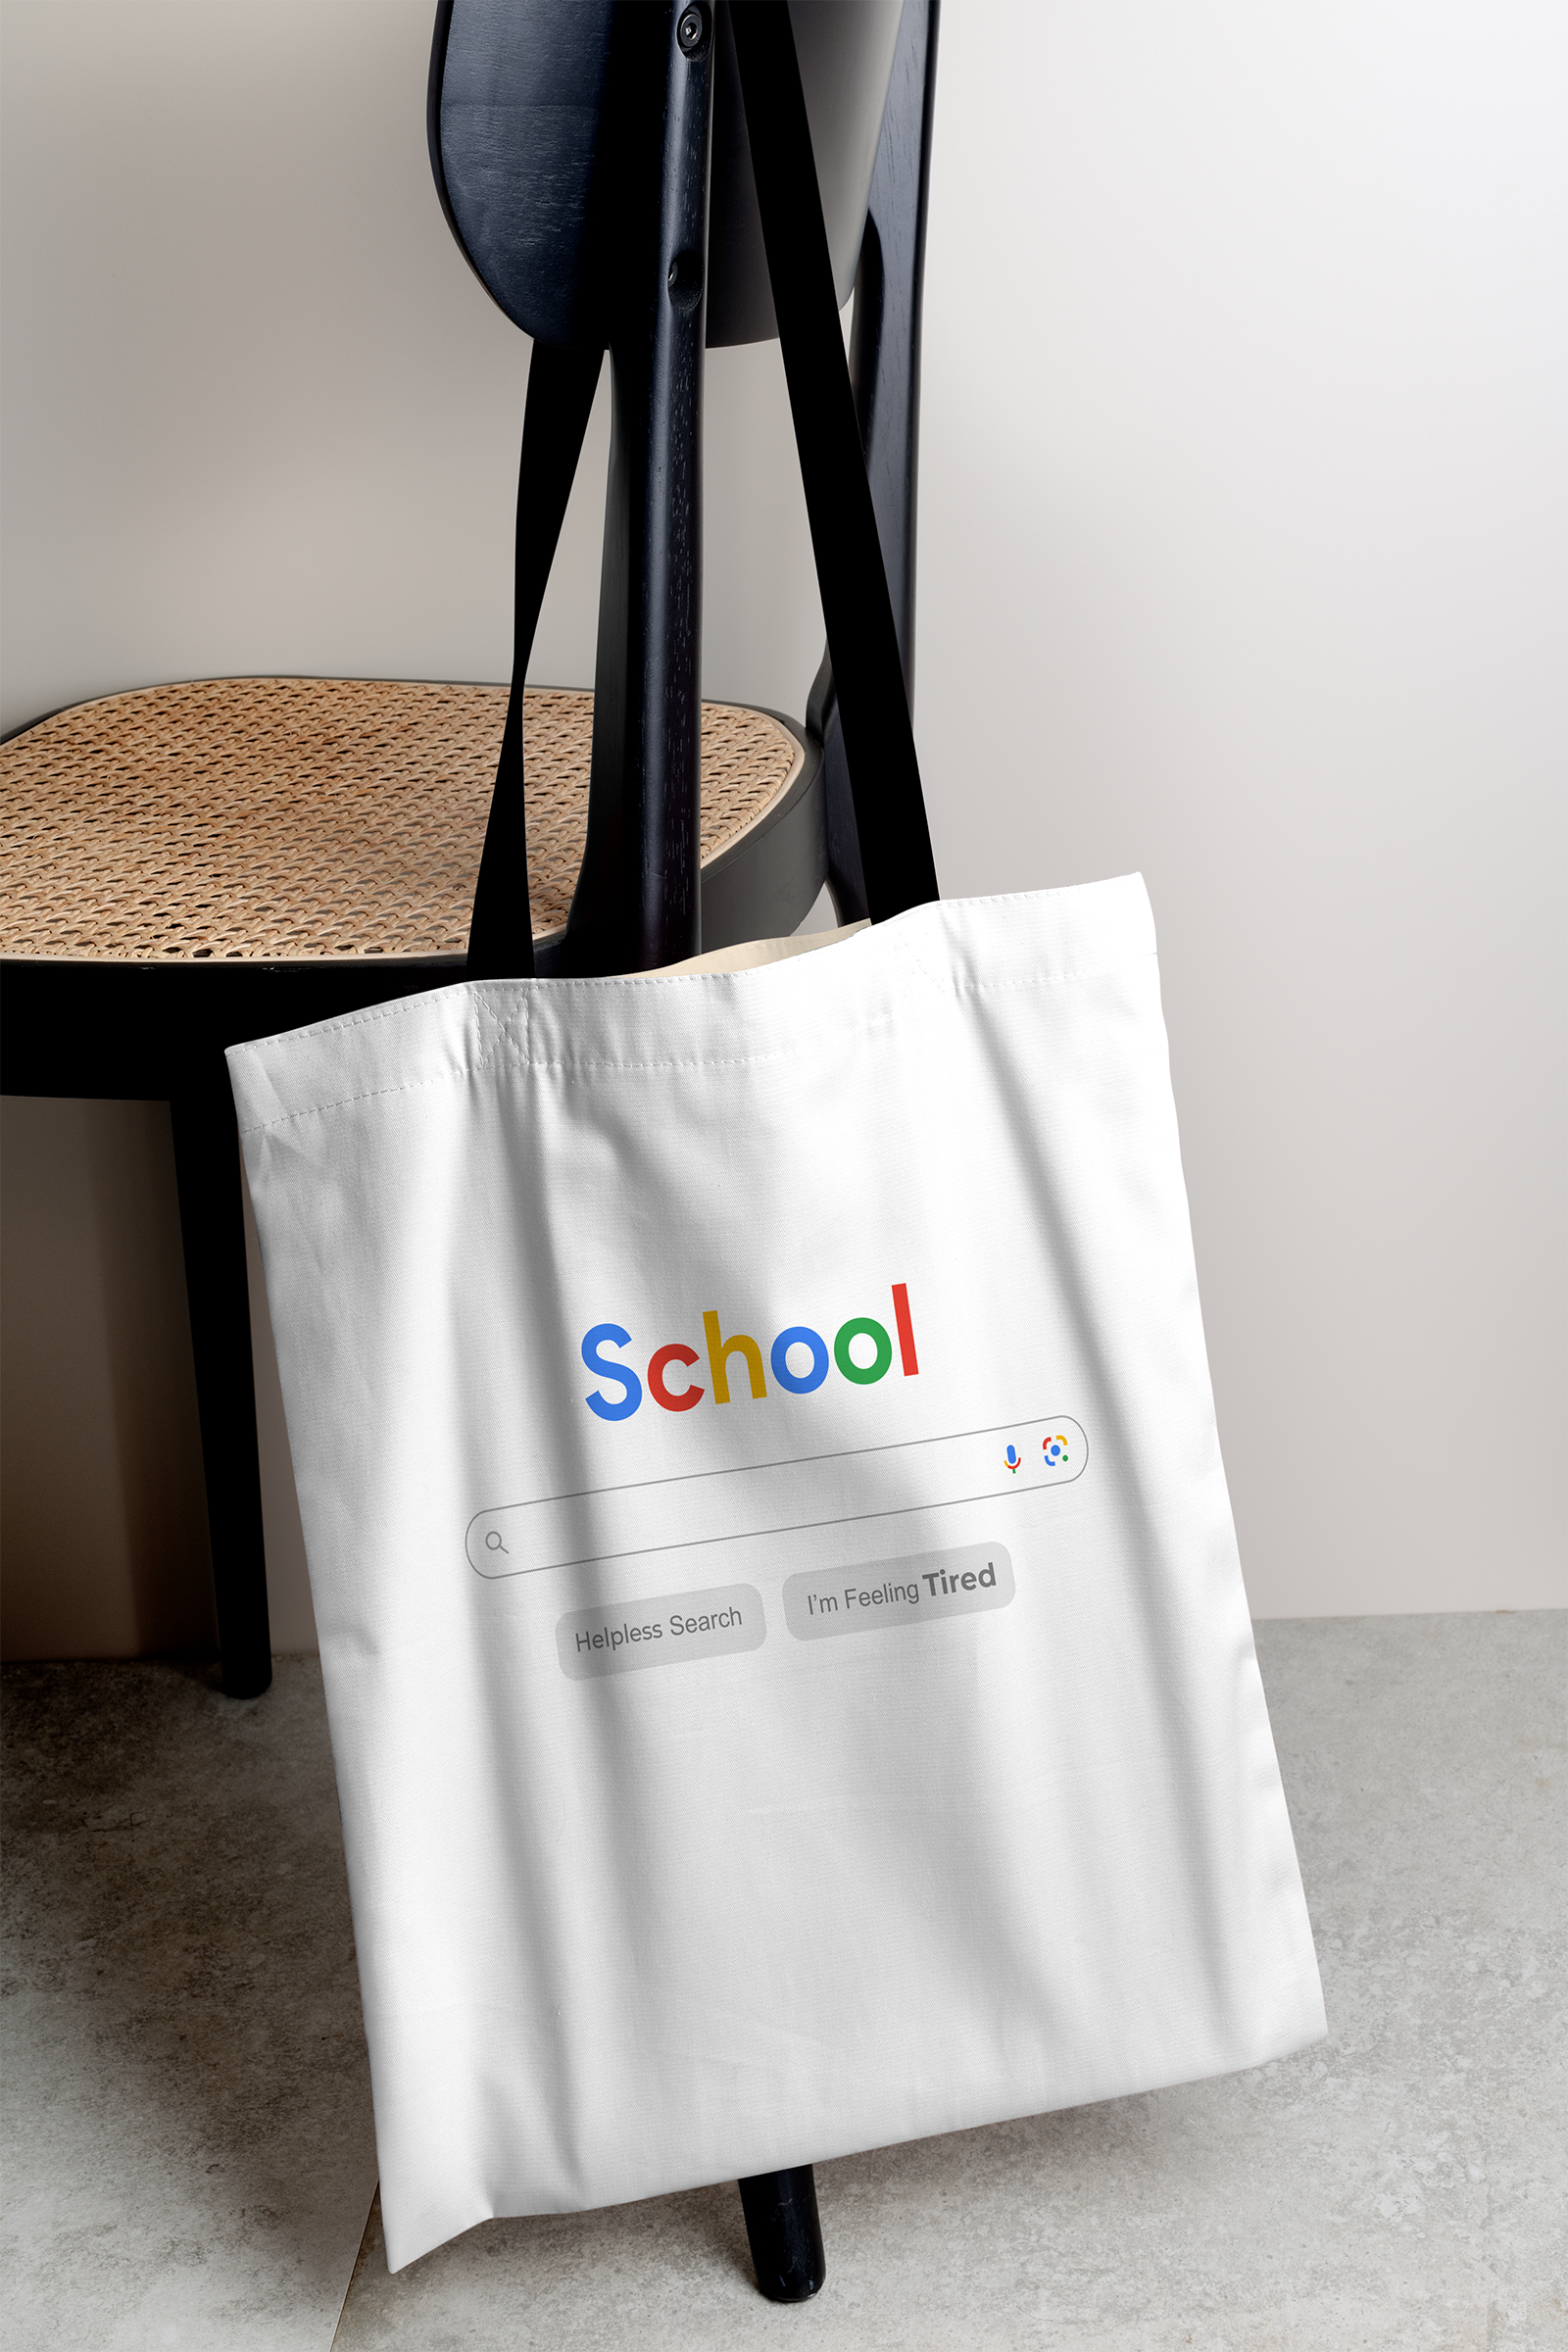 School Search Tote Bag